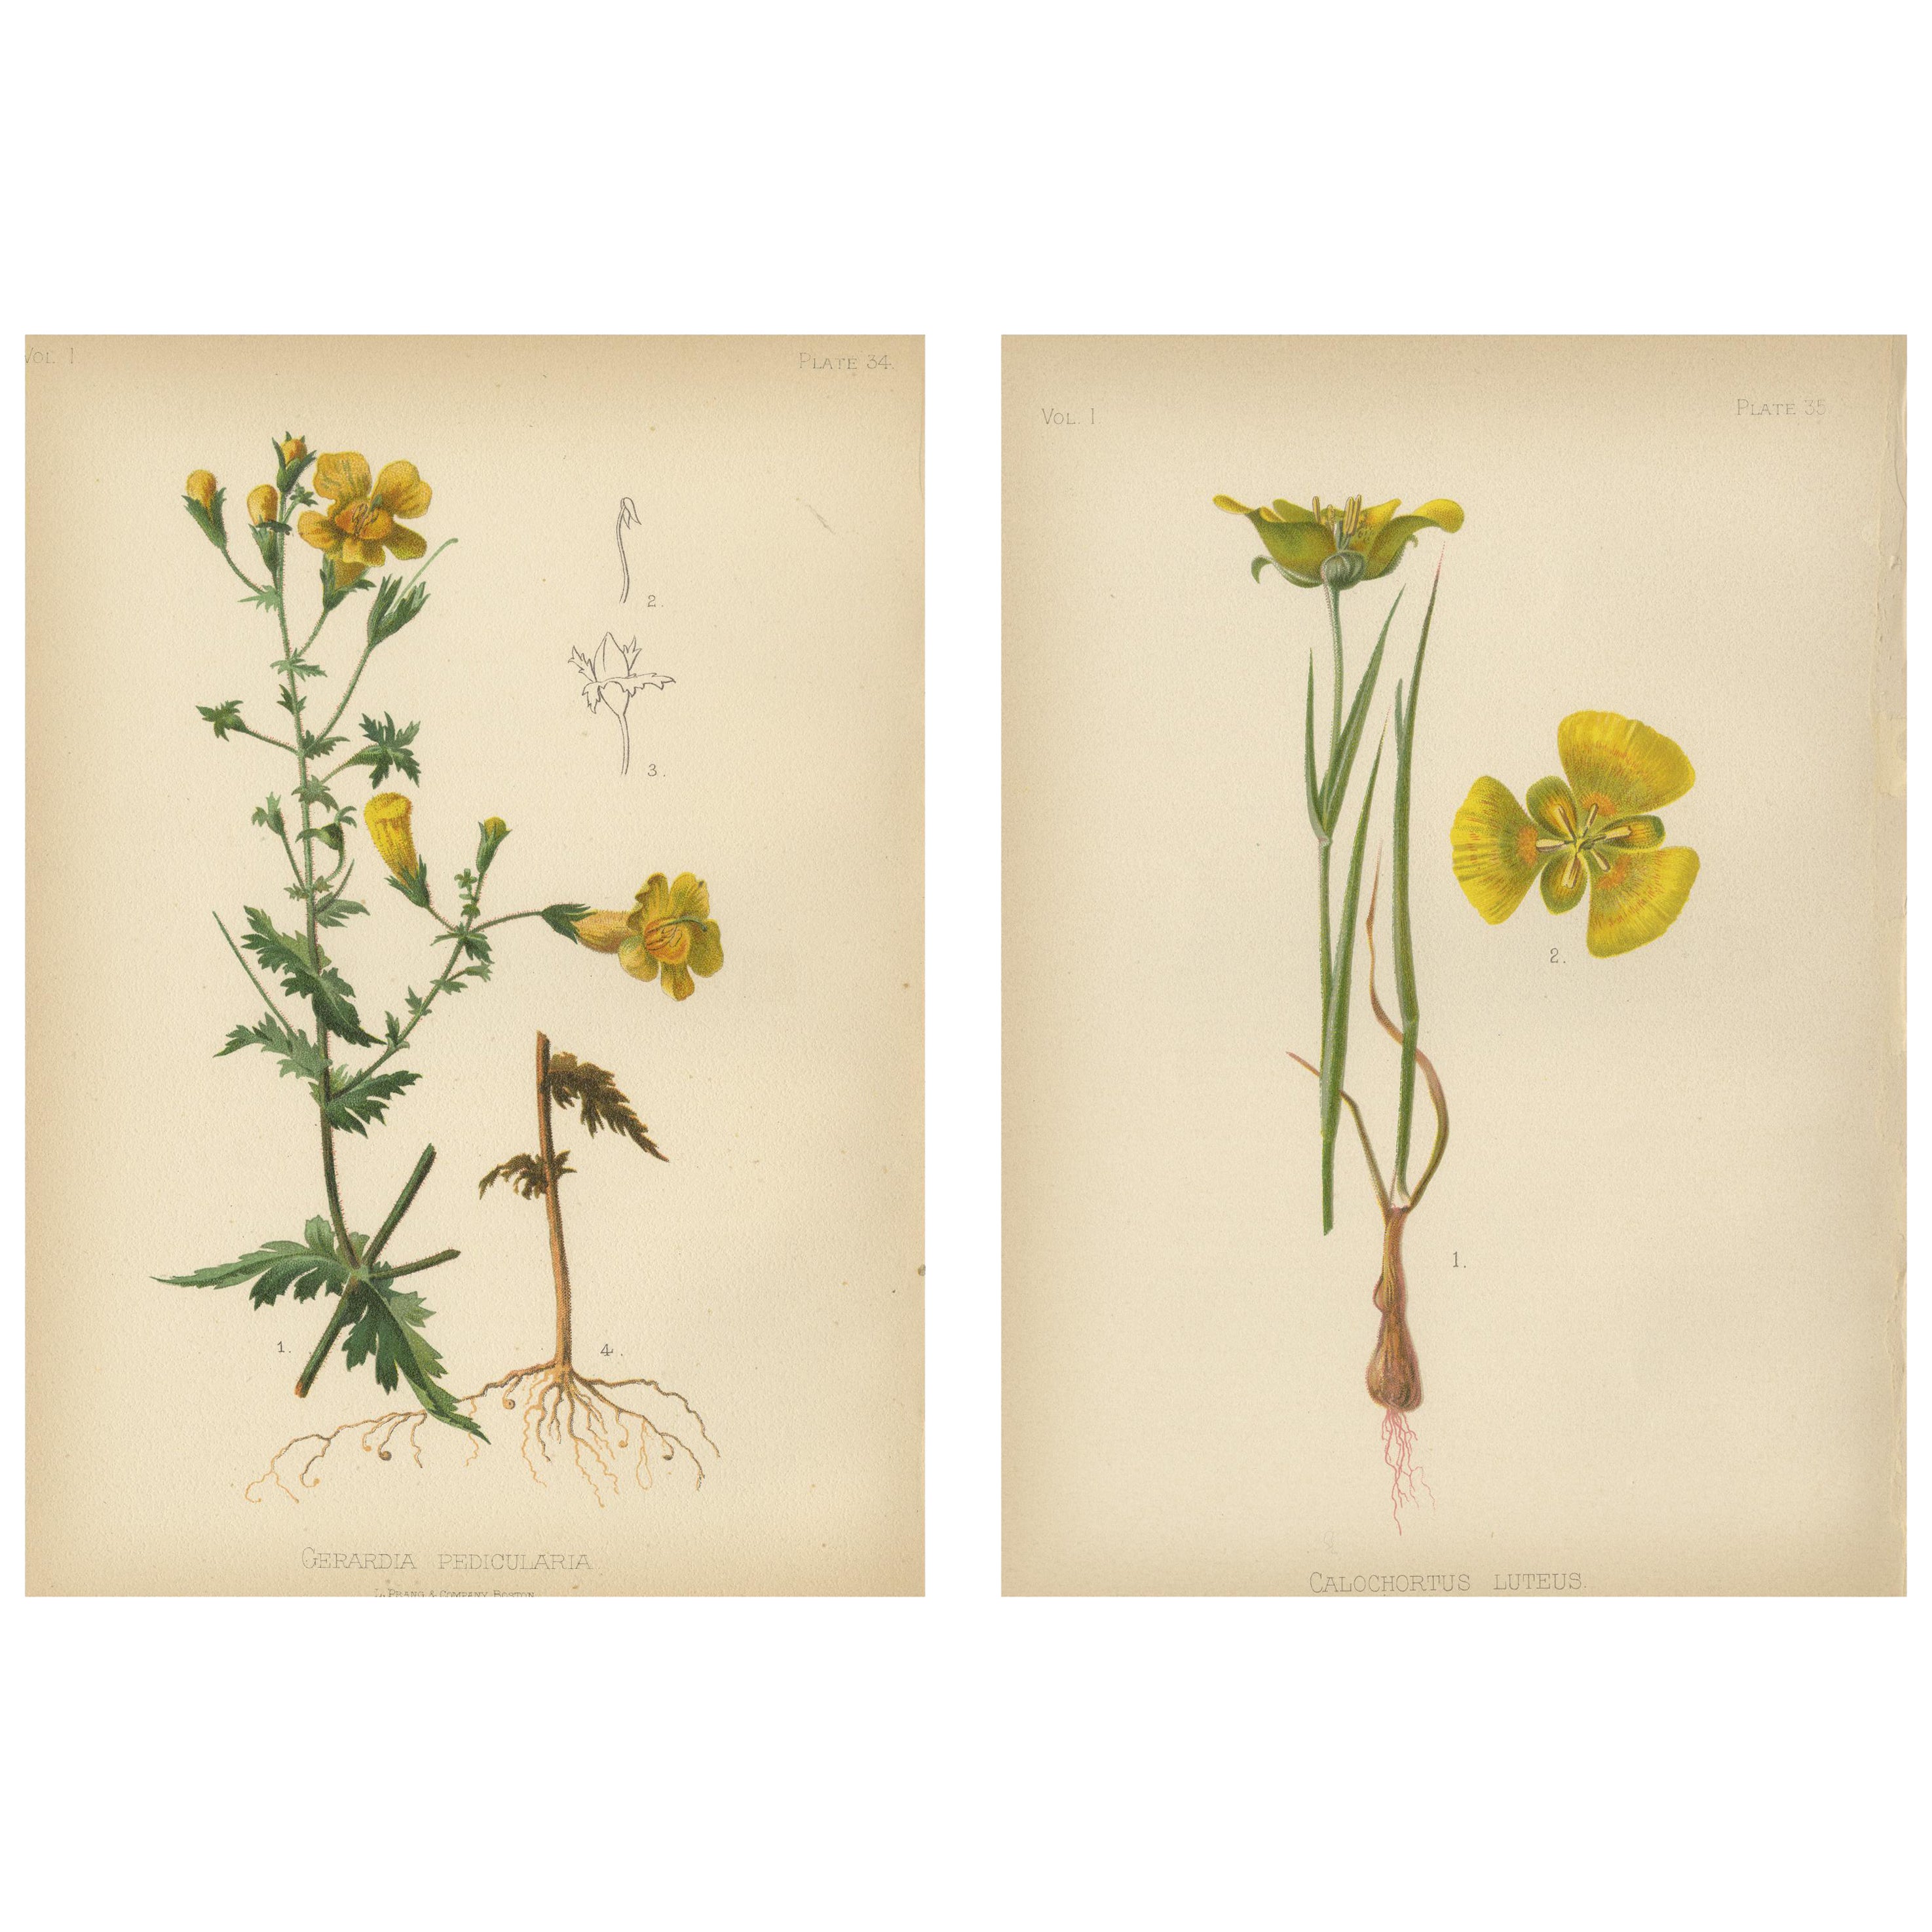 Flora der amerikanischen Ureinwohner der USA – zwei Original botanische Chromolithograps, 1879